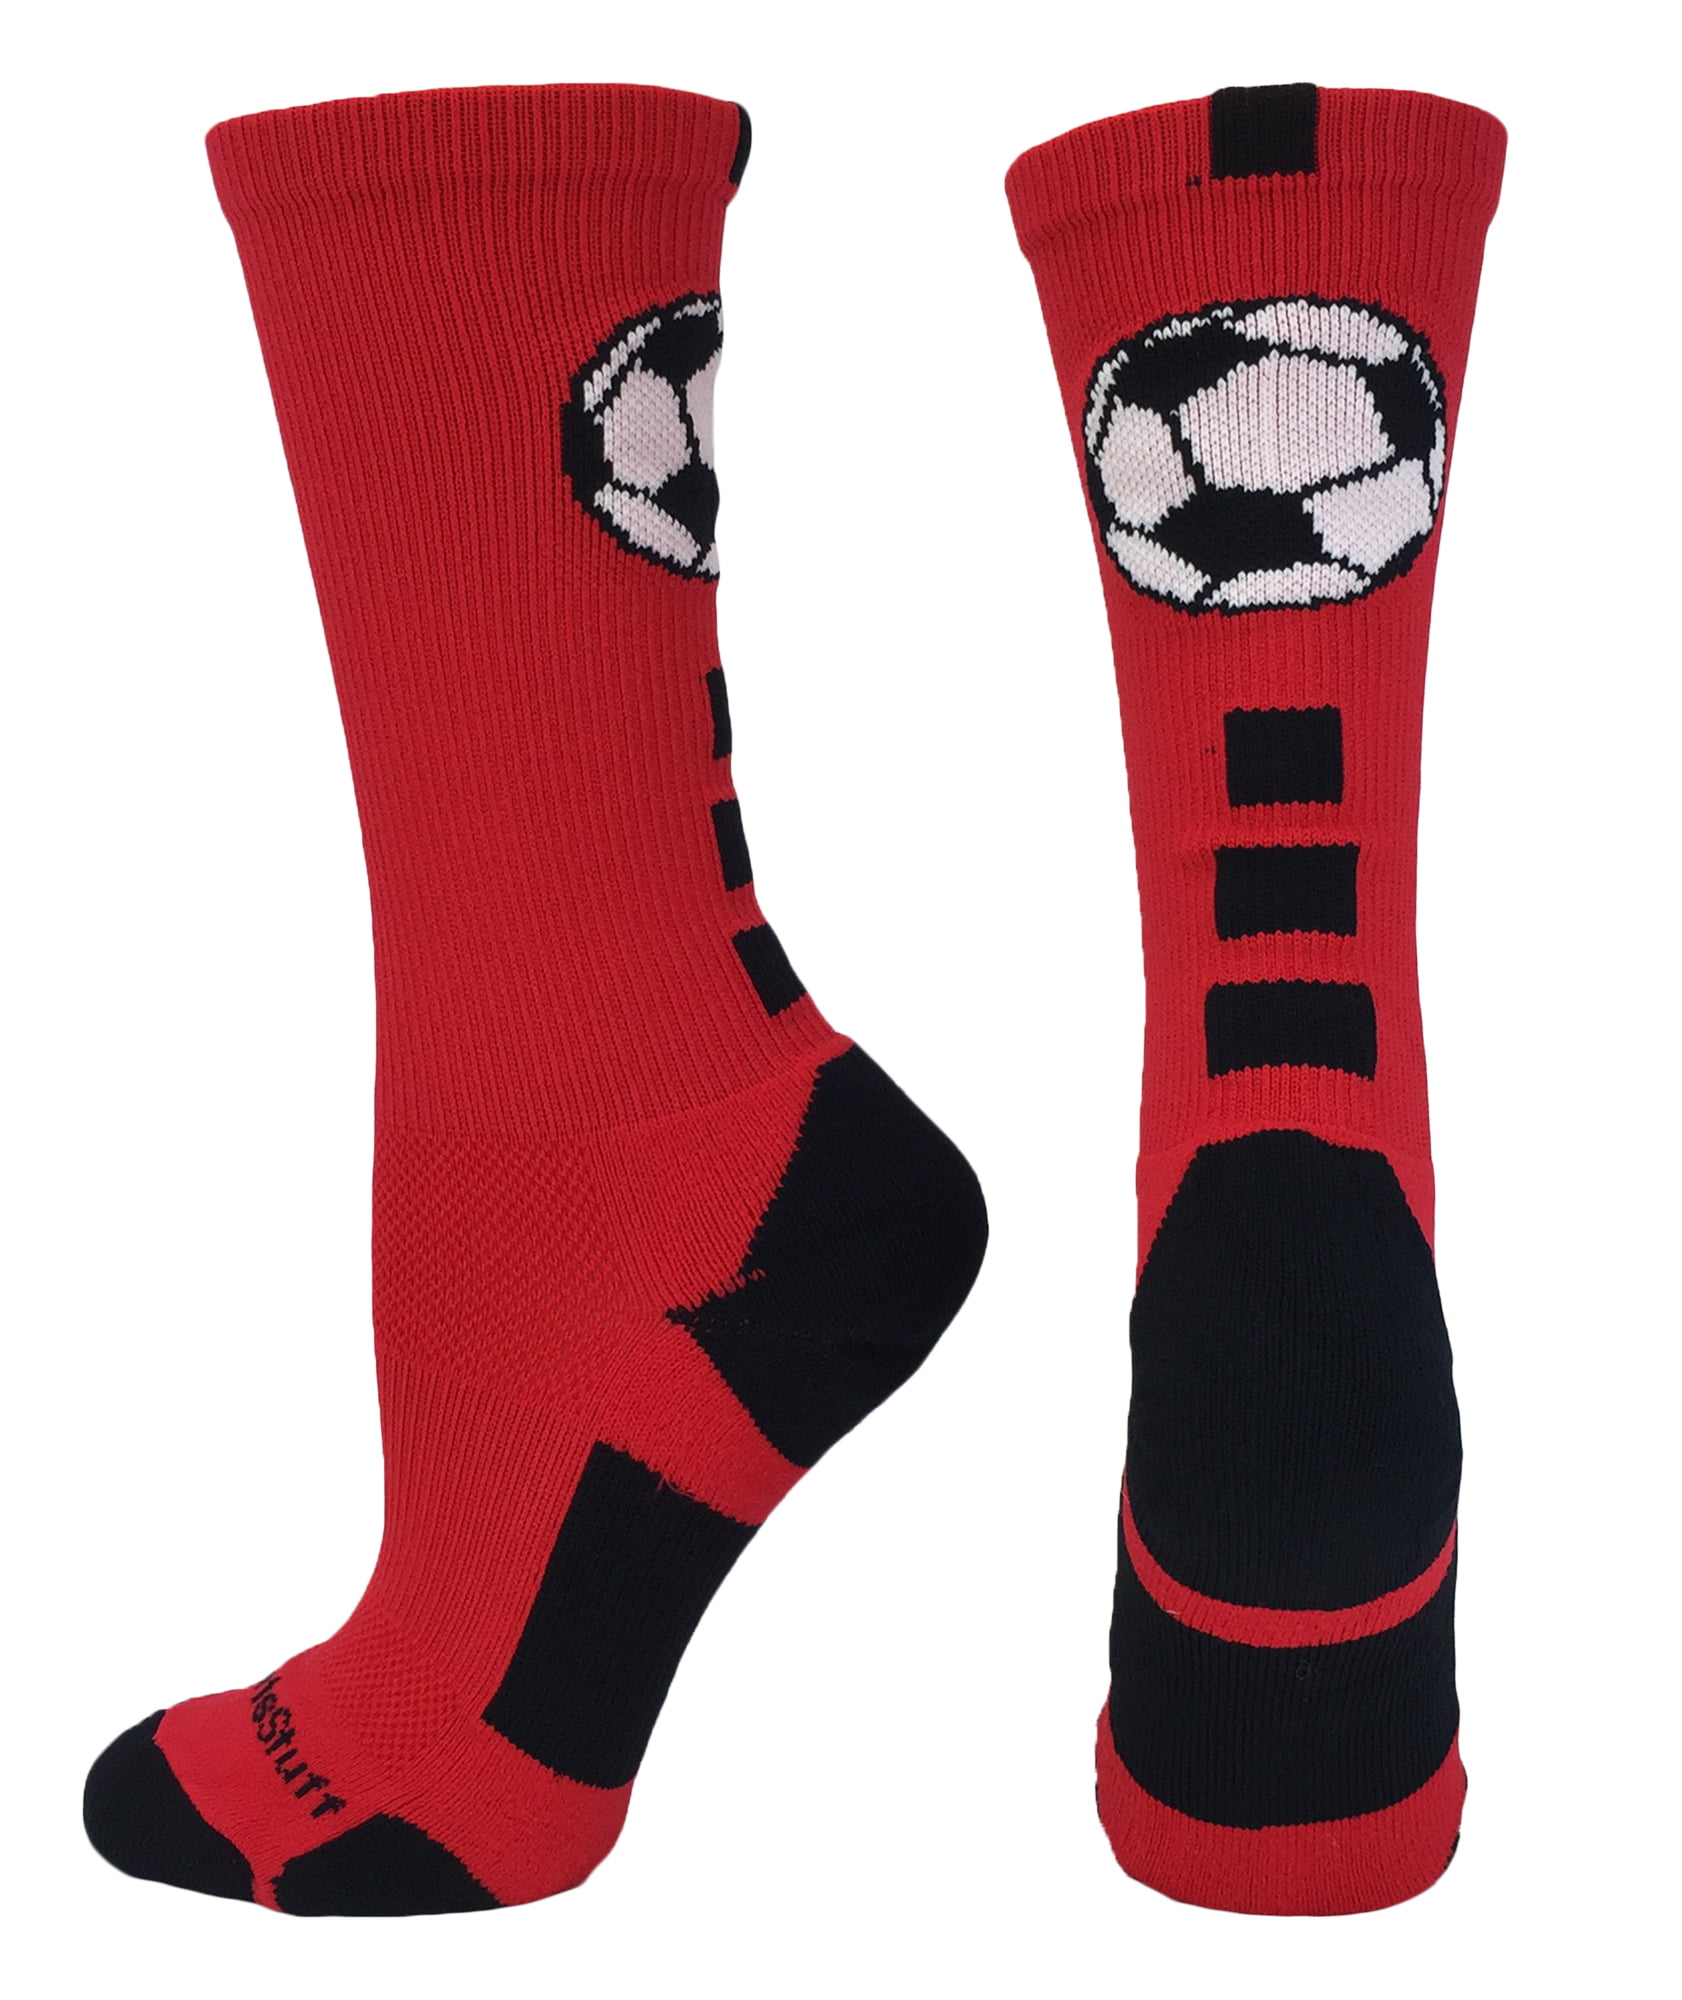 Soccer Ball Crew Socks (Red/Black, Medium) - Walmart.com